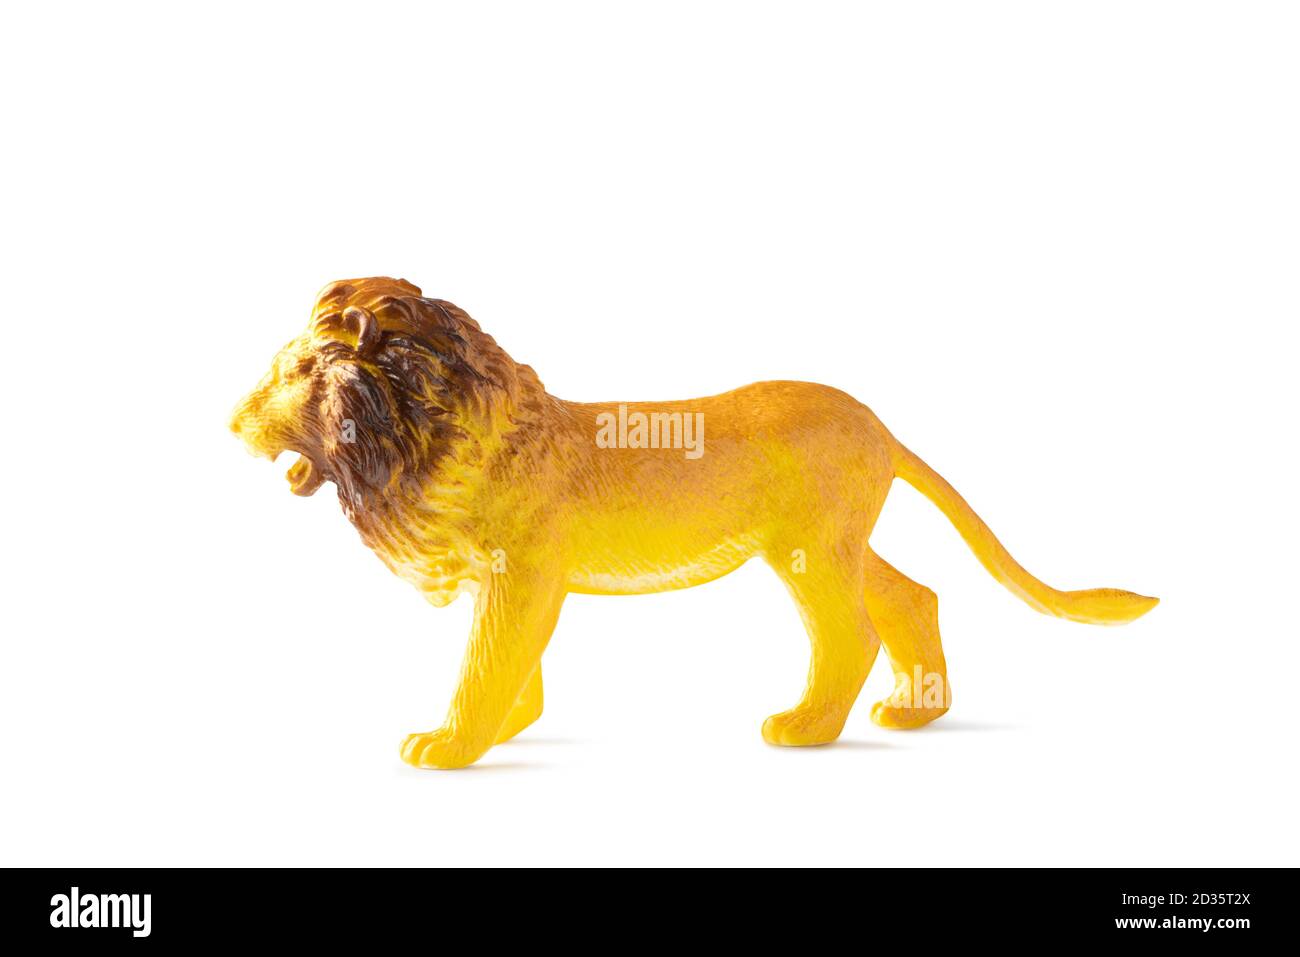 Figurine Lion mini isolée sur fond blanc. Jouet animal en plastique. Profondeur de champ complète. Masque Banque D'Images